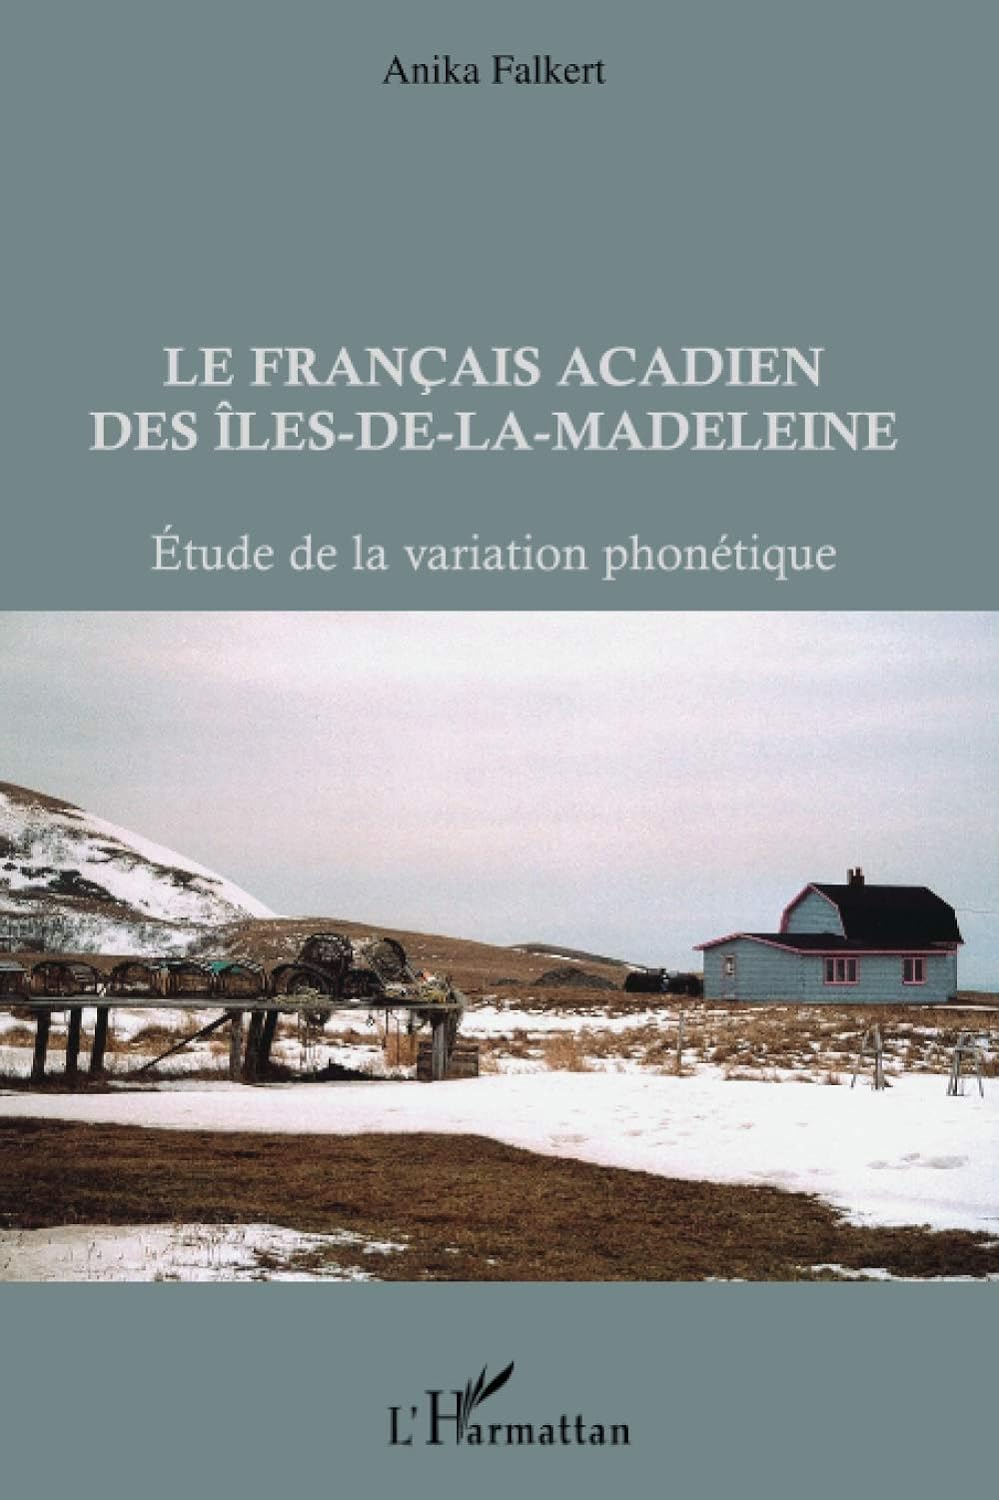 Couverture de l'ouvrage "Le français acadien des Îles-de-la-Madeleine"